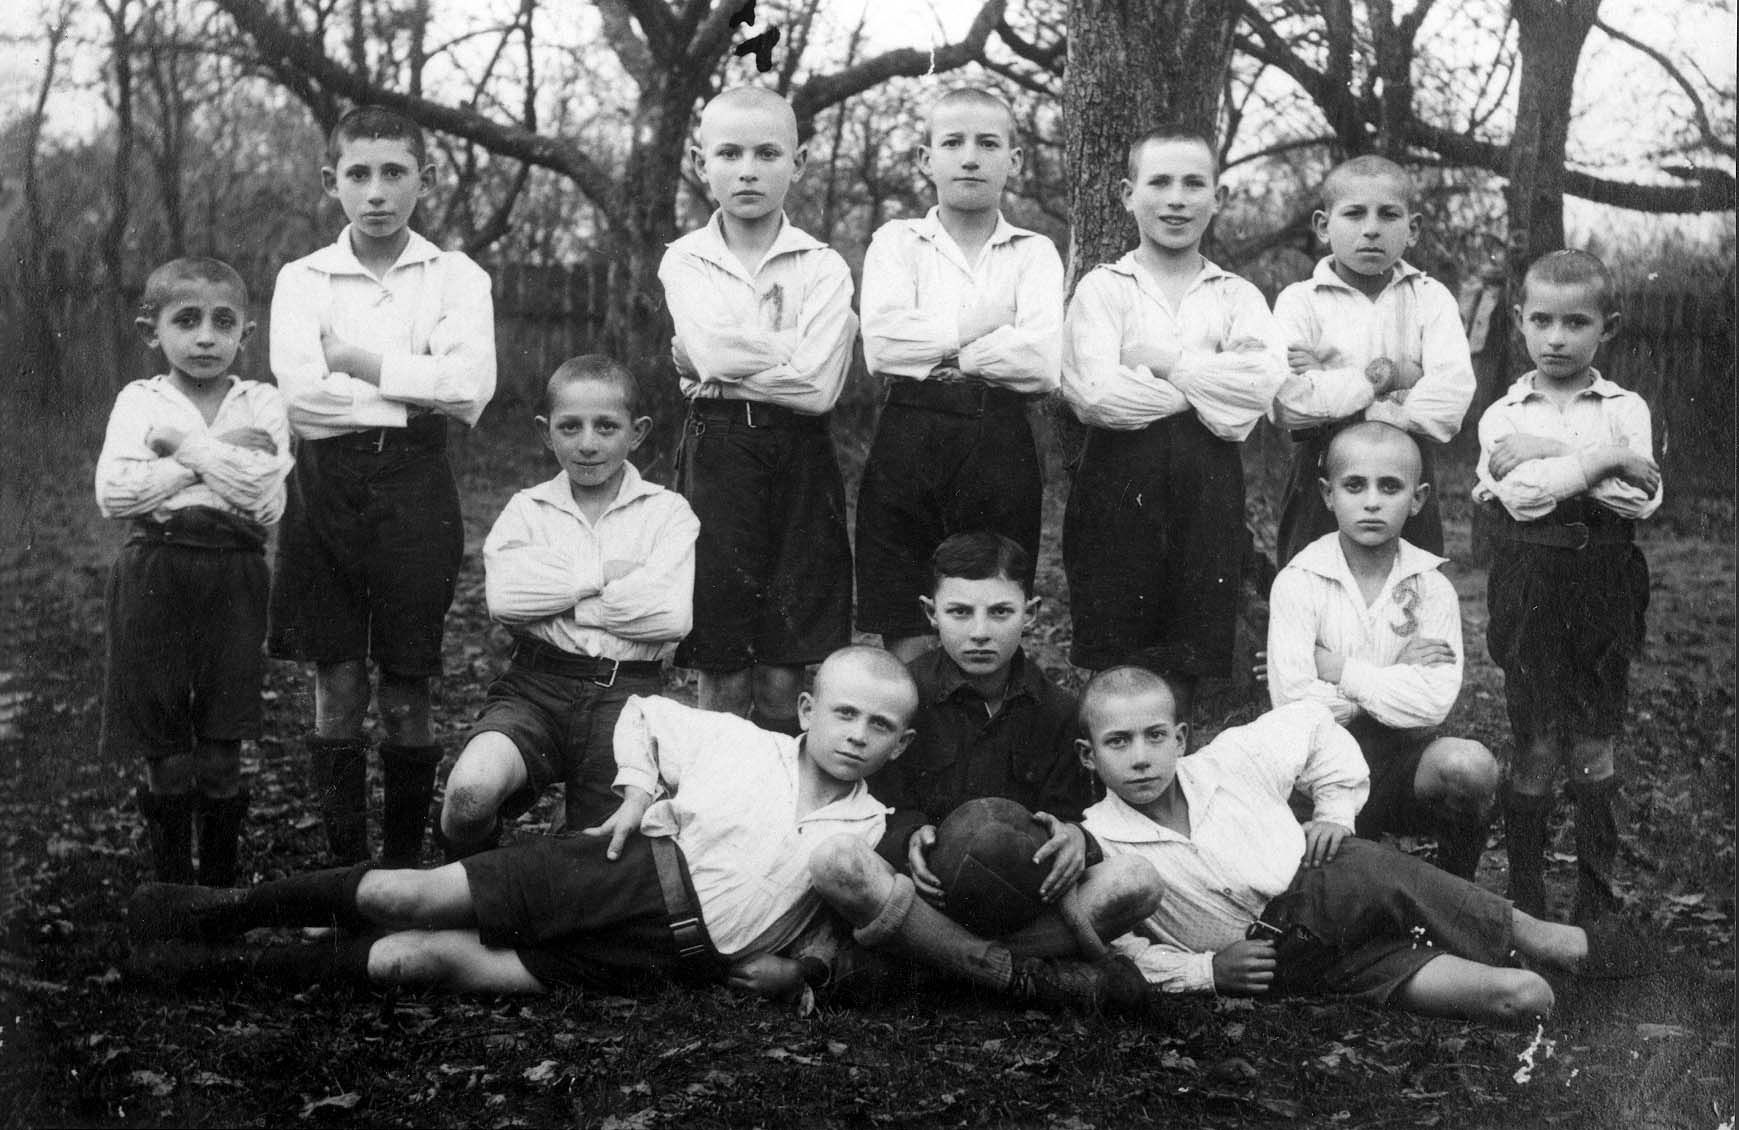 Staszow, Polonia, preguerra. Equipo de fútbol formado por niños judíos